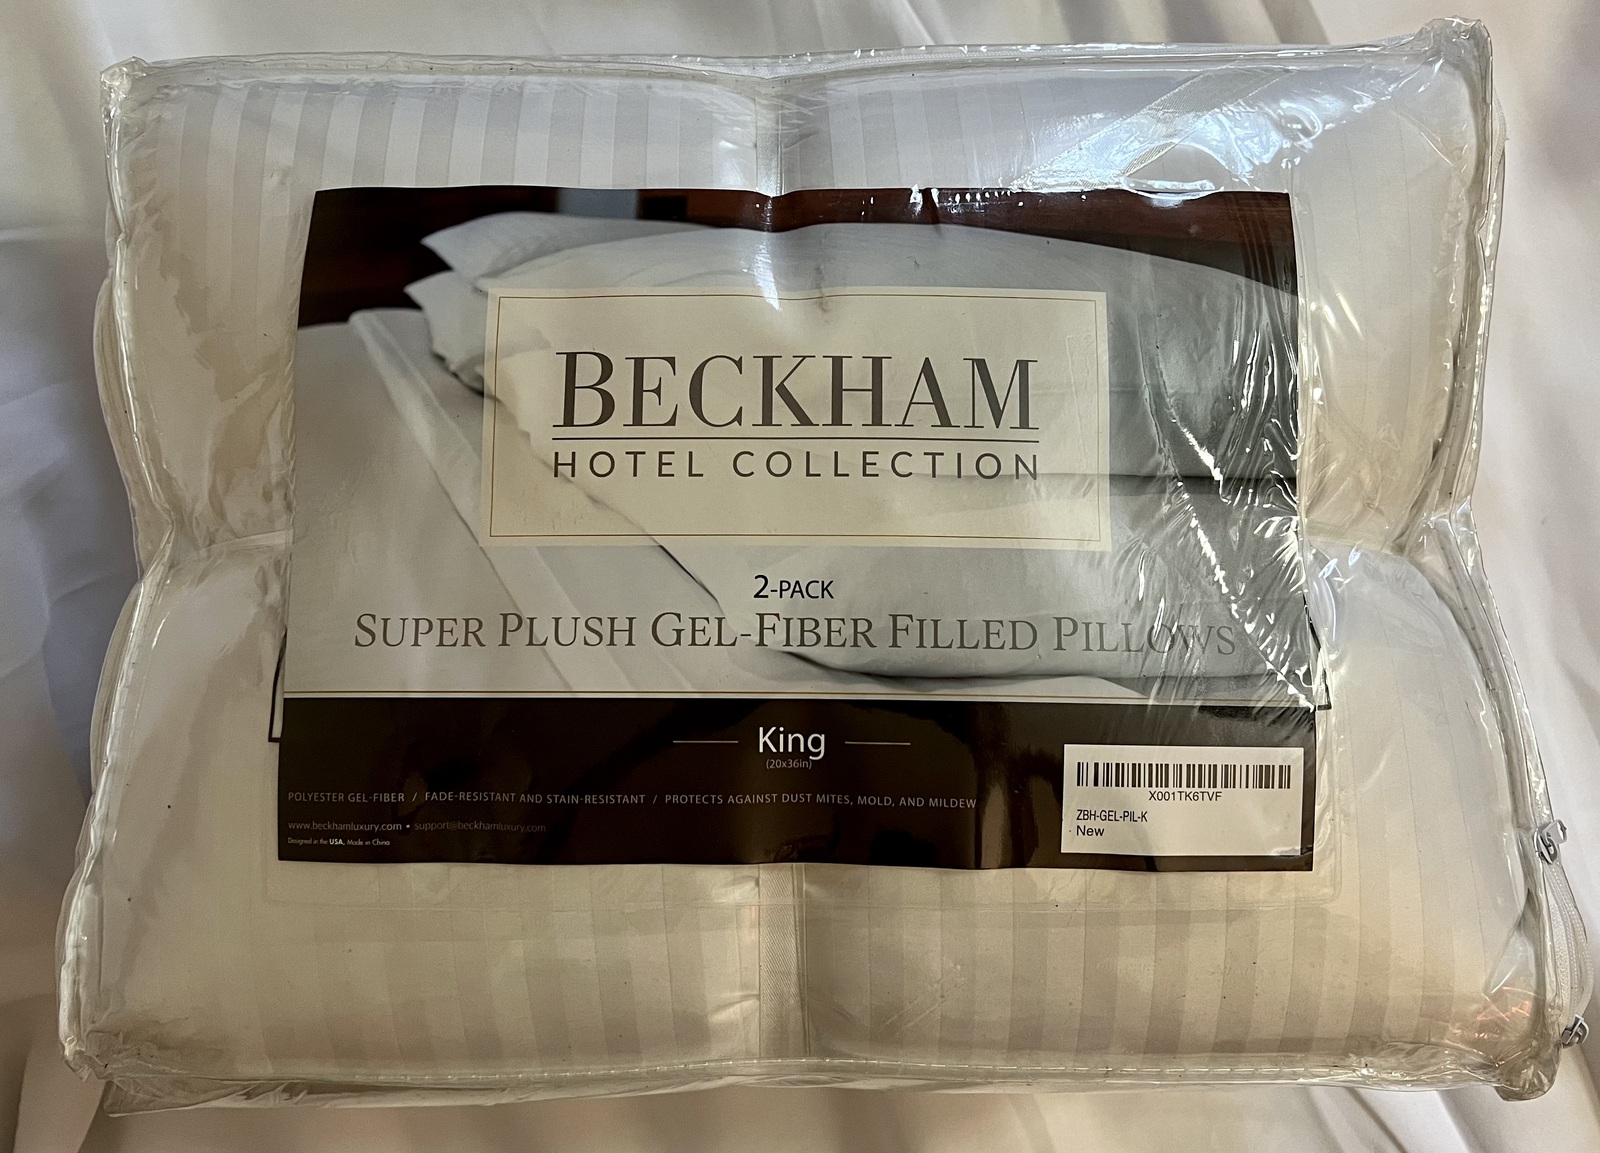 Beckham Luxury Linen Beckham Hotel Collection Bed Pillows King